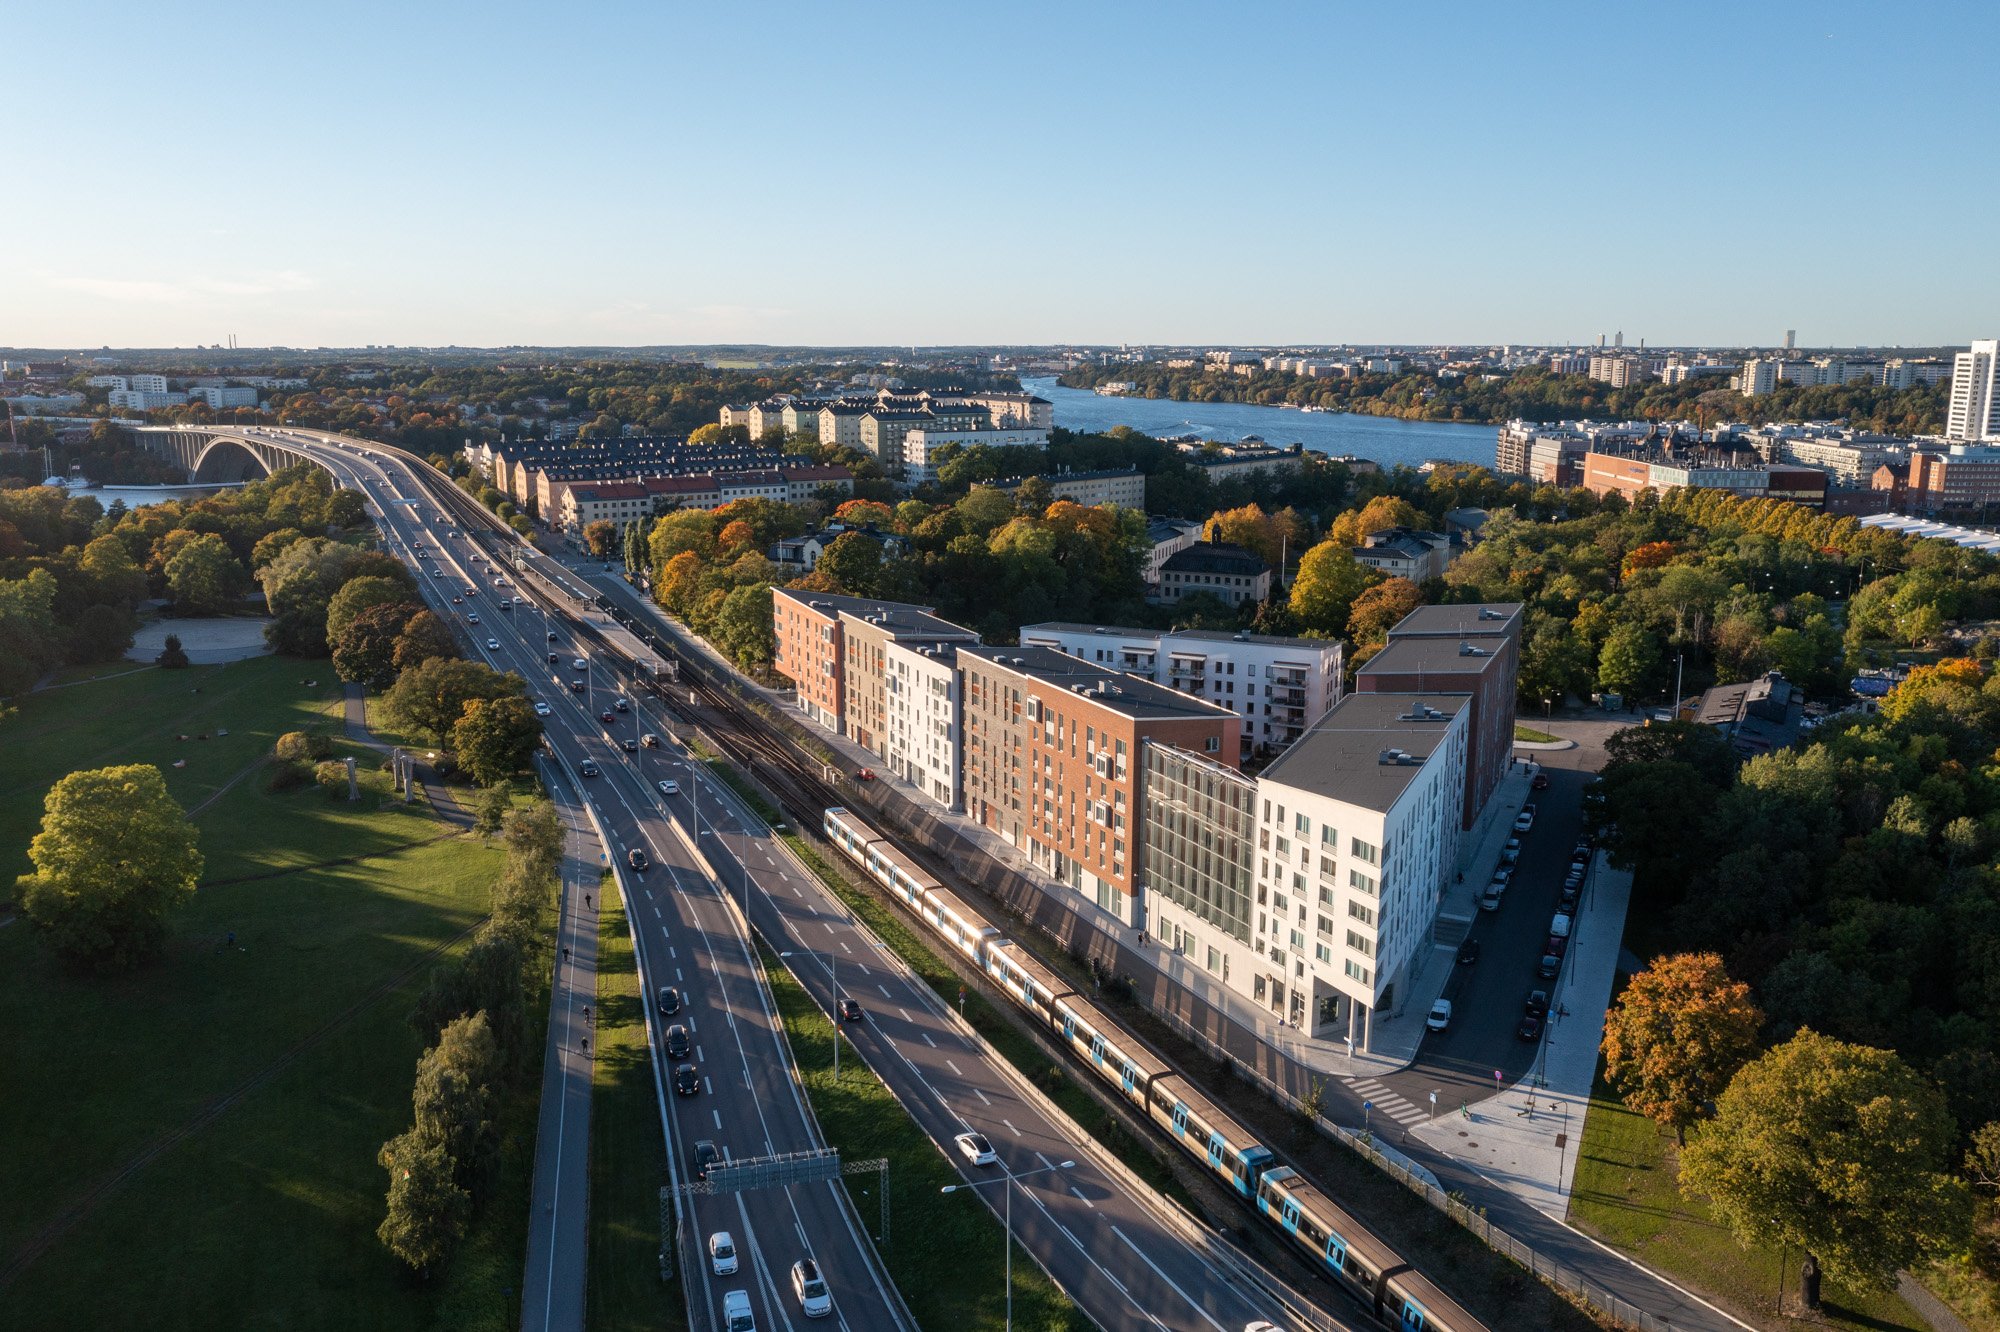 Drönarbild av Kristinebergs Slottspark över hela bostadskvarteret med tågspår och motorled